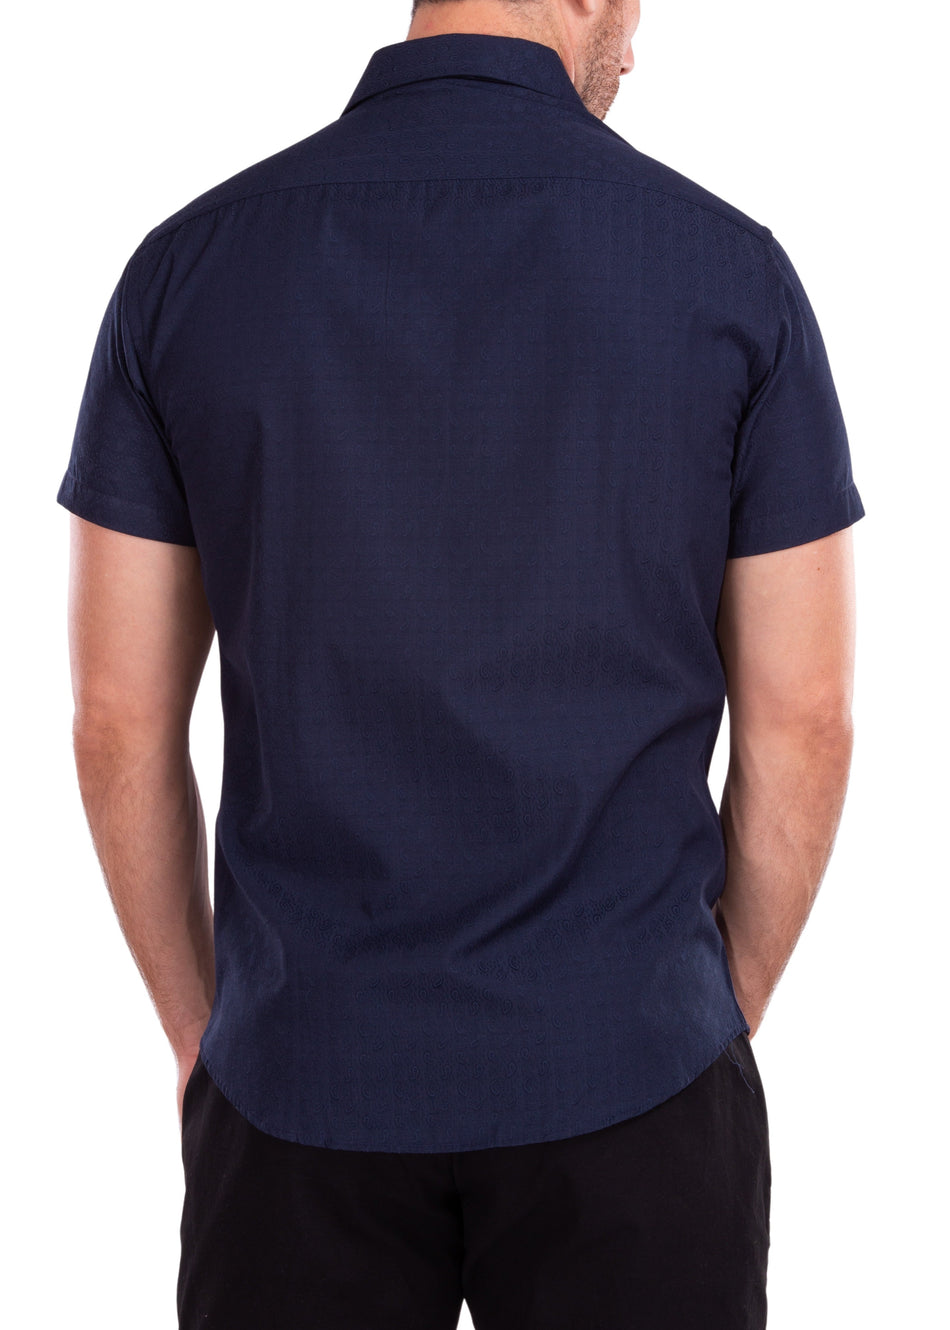 212111 - Navy Button Up Short Sleeve Dress Shirt